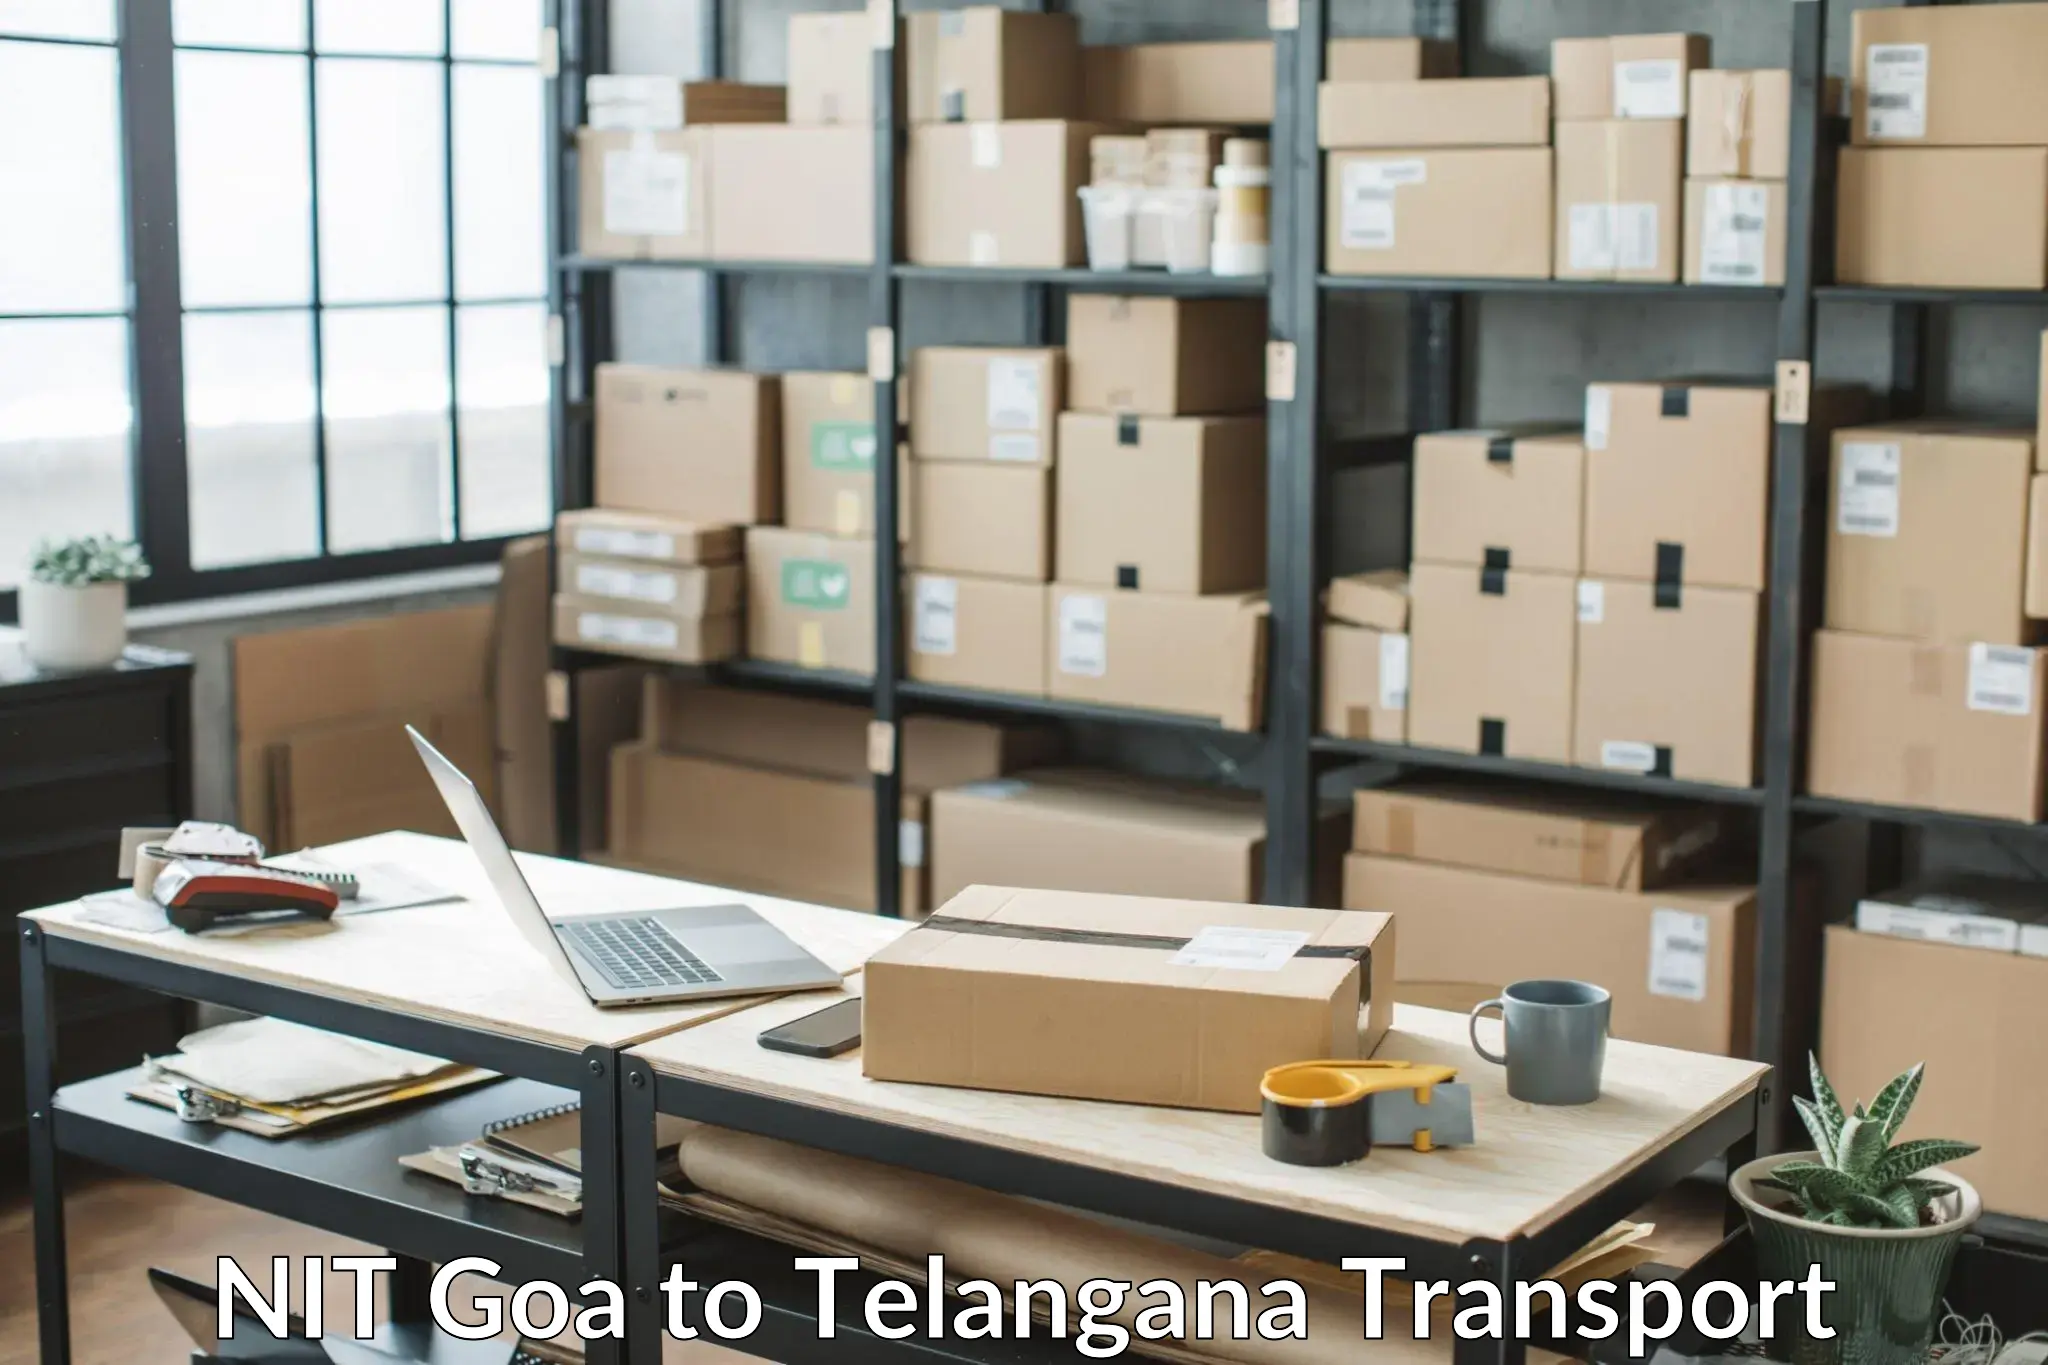 Express transport services NIT Goa to Balanagar